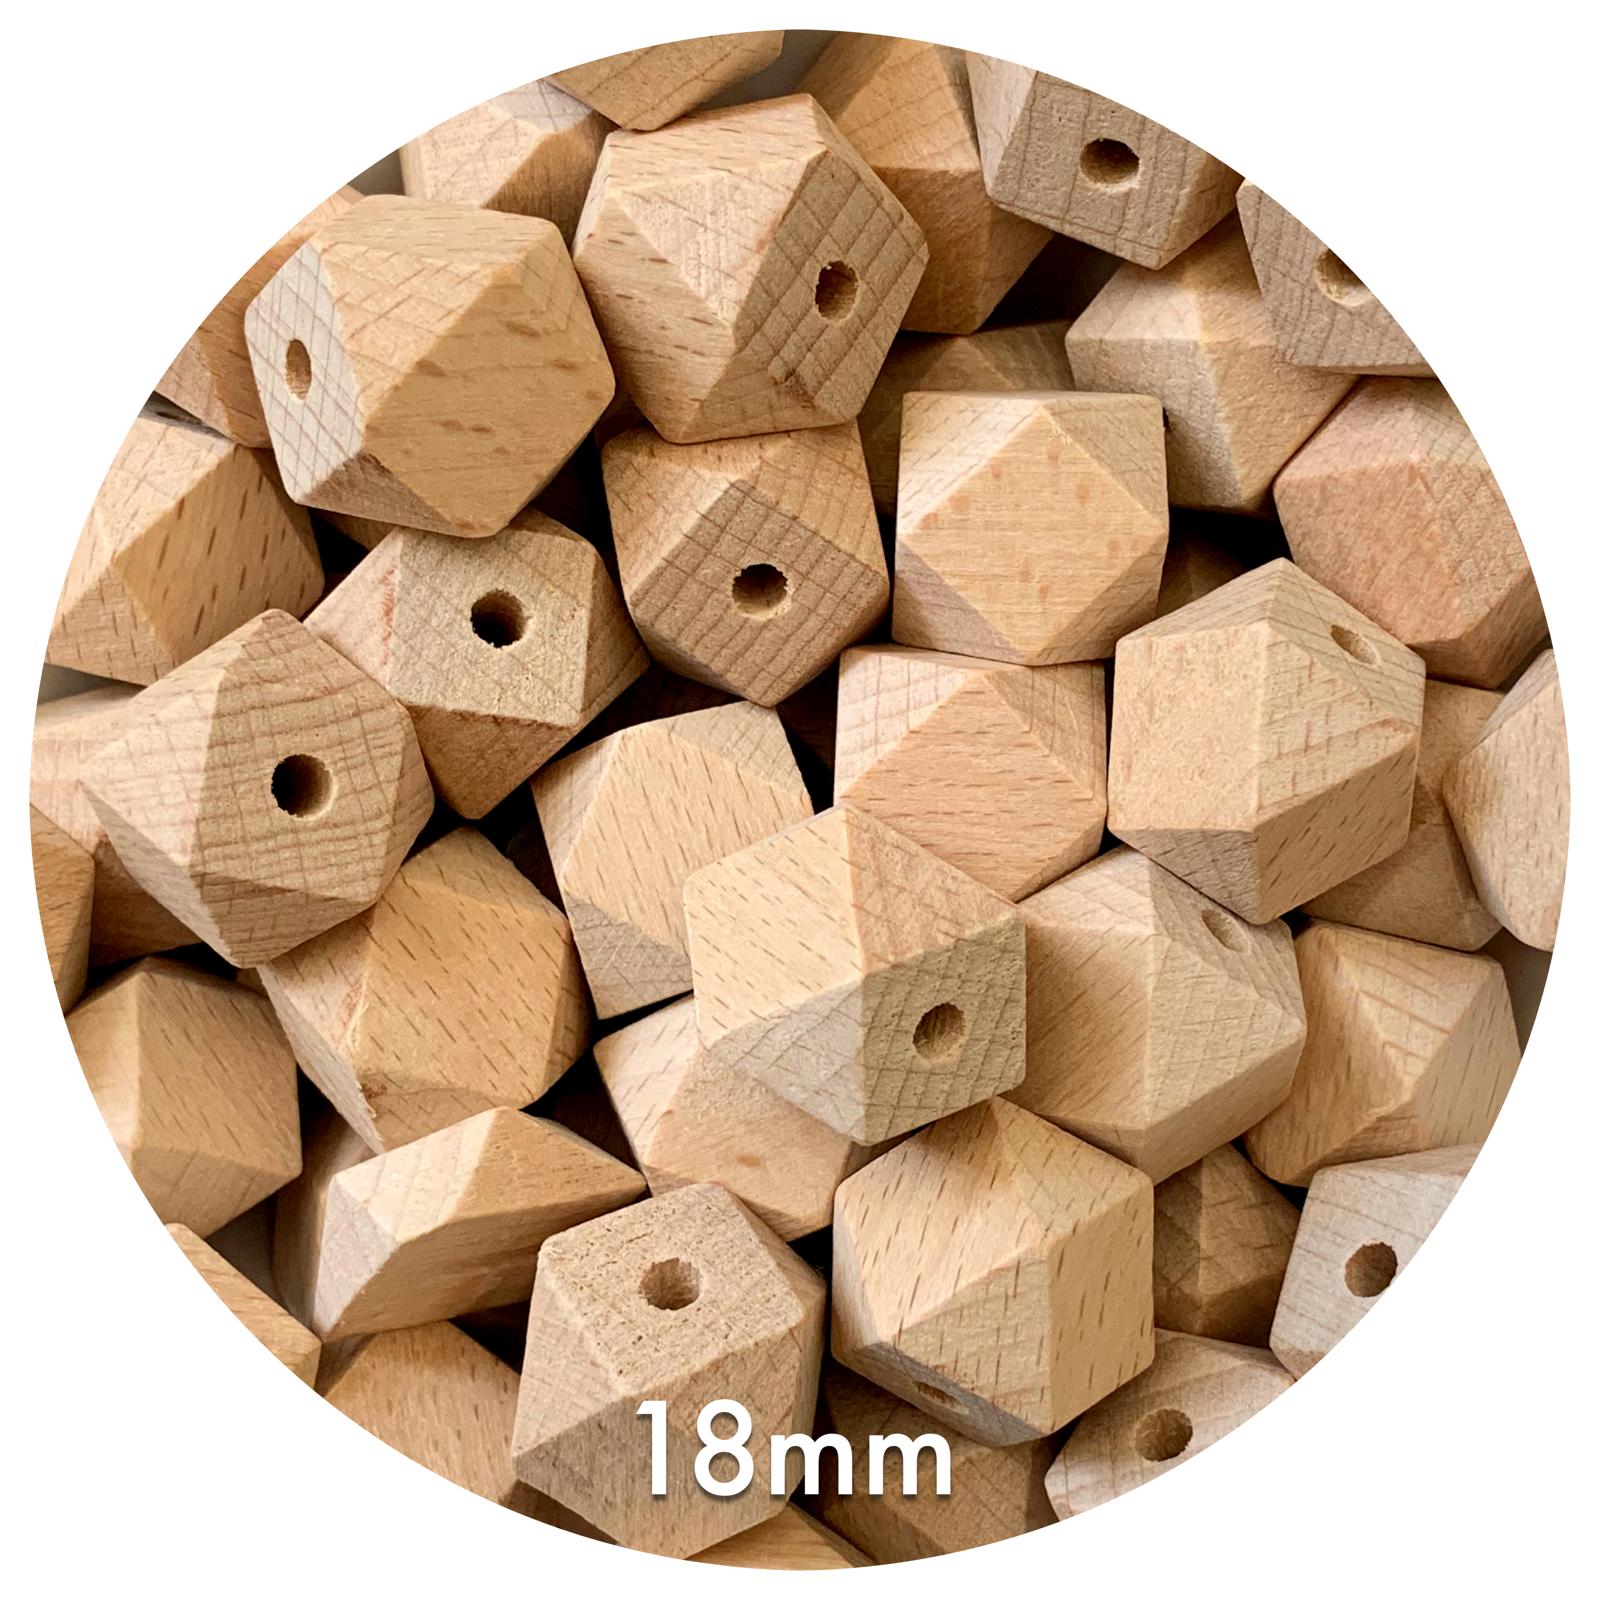 Beech Wood Hexagon Beads - 18mm - 5 Beads